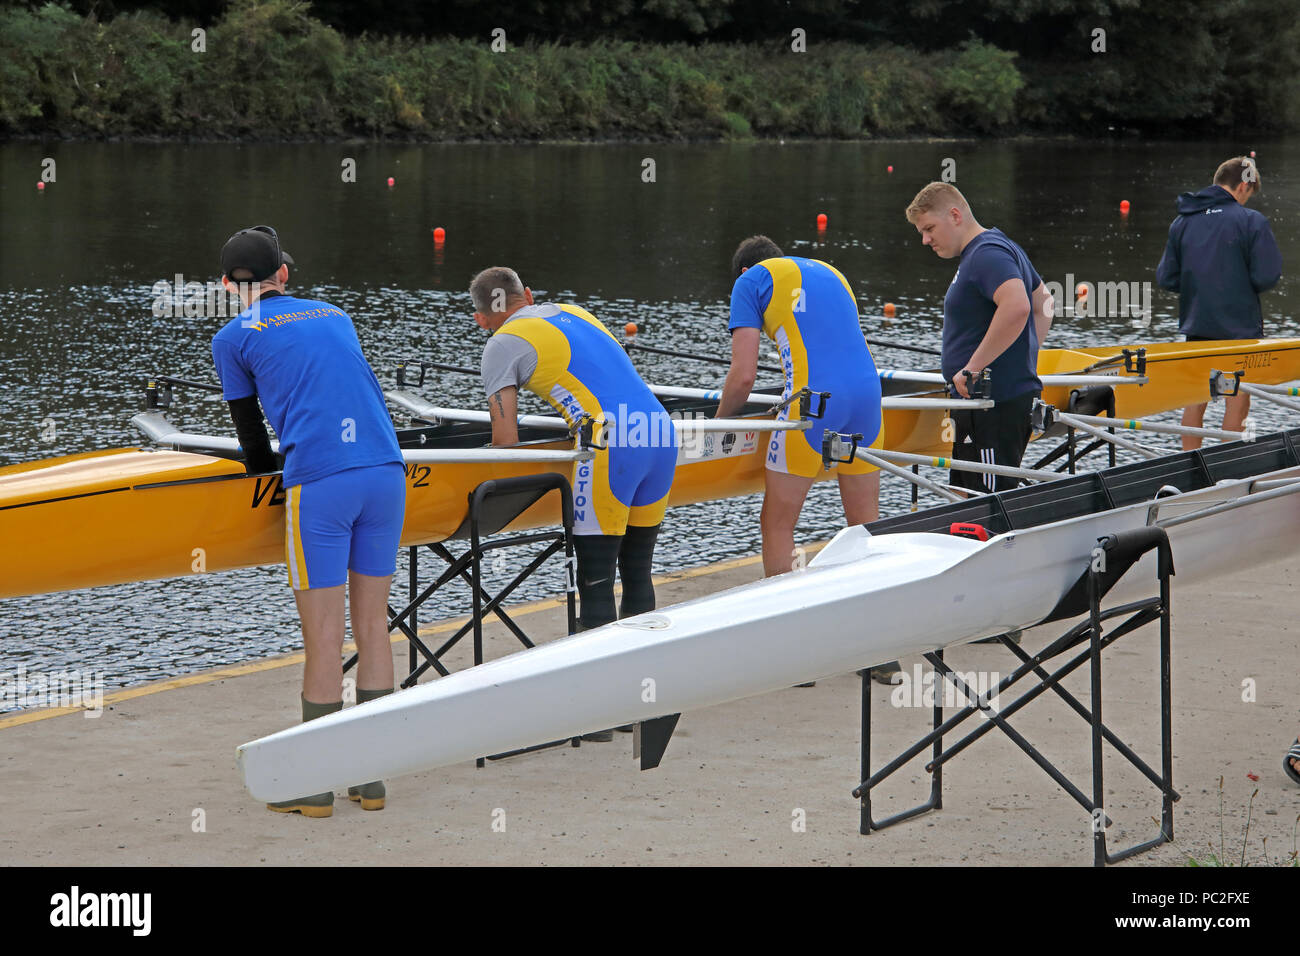 Les hommes de la CMR le lancement d'un quad, à Warrington Rowing Club 2018 Régate d'été, Howley lane, rivière Mersey, Cheshire, North West England, UK Banque D'Images